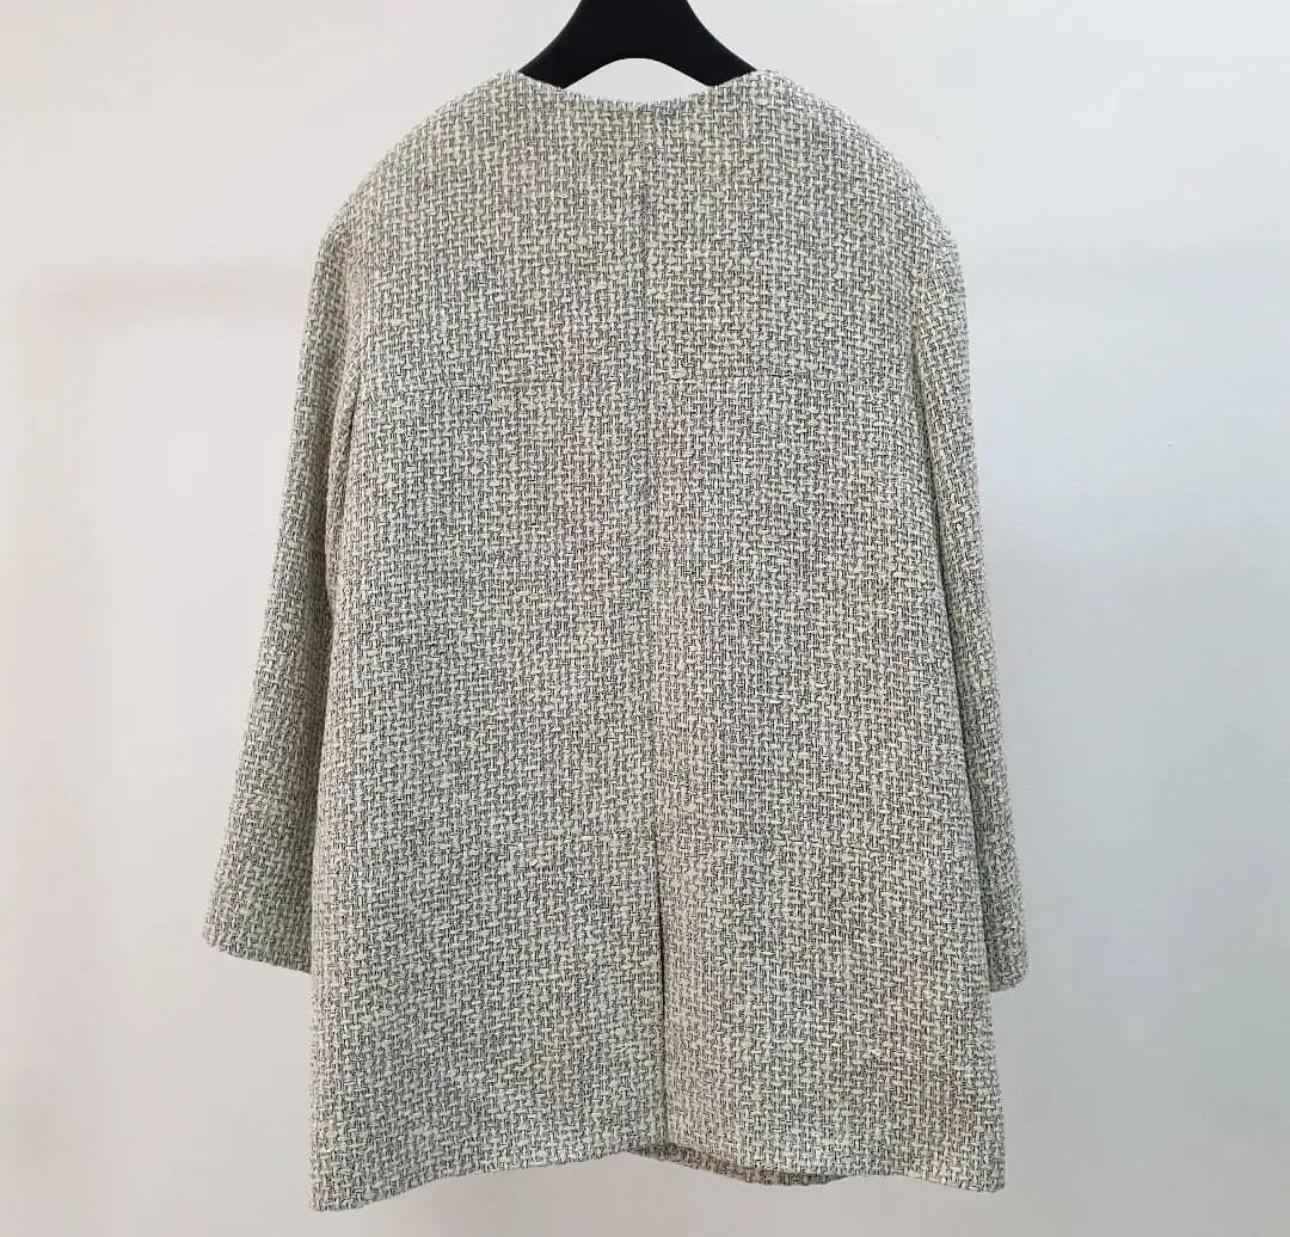 Aus der Spring 2014 Collection'S. Kurzer Mantel aus cremefarbenem und grauem Chanel-Tweed mit zwei Leistentaschen, strukturierten Schultern, Rundhalsausschnitt, Kette am Innensaum, ineinandergreifender CC-Verzierung auf der Vorderseite und Haken-